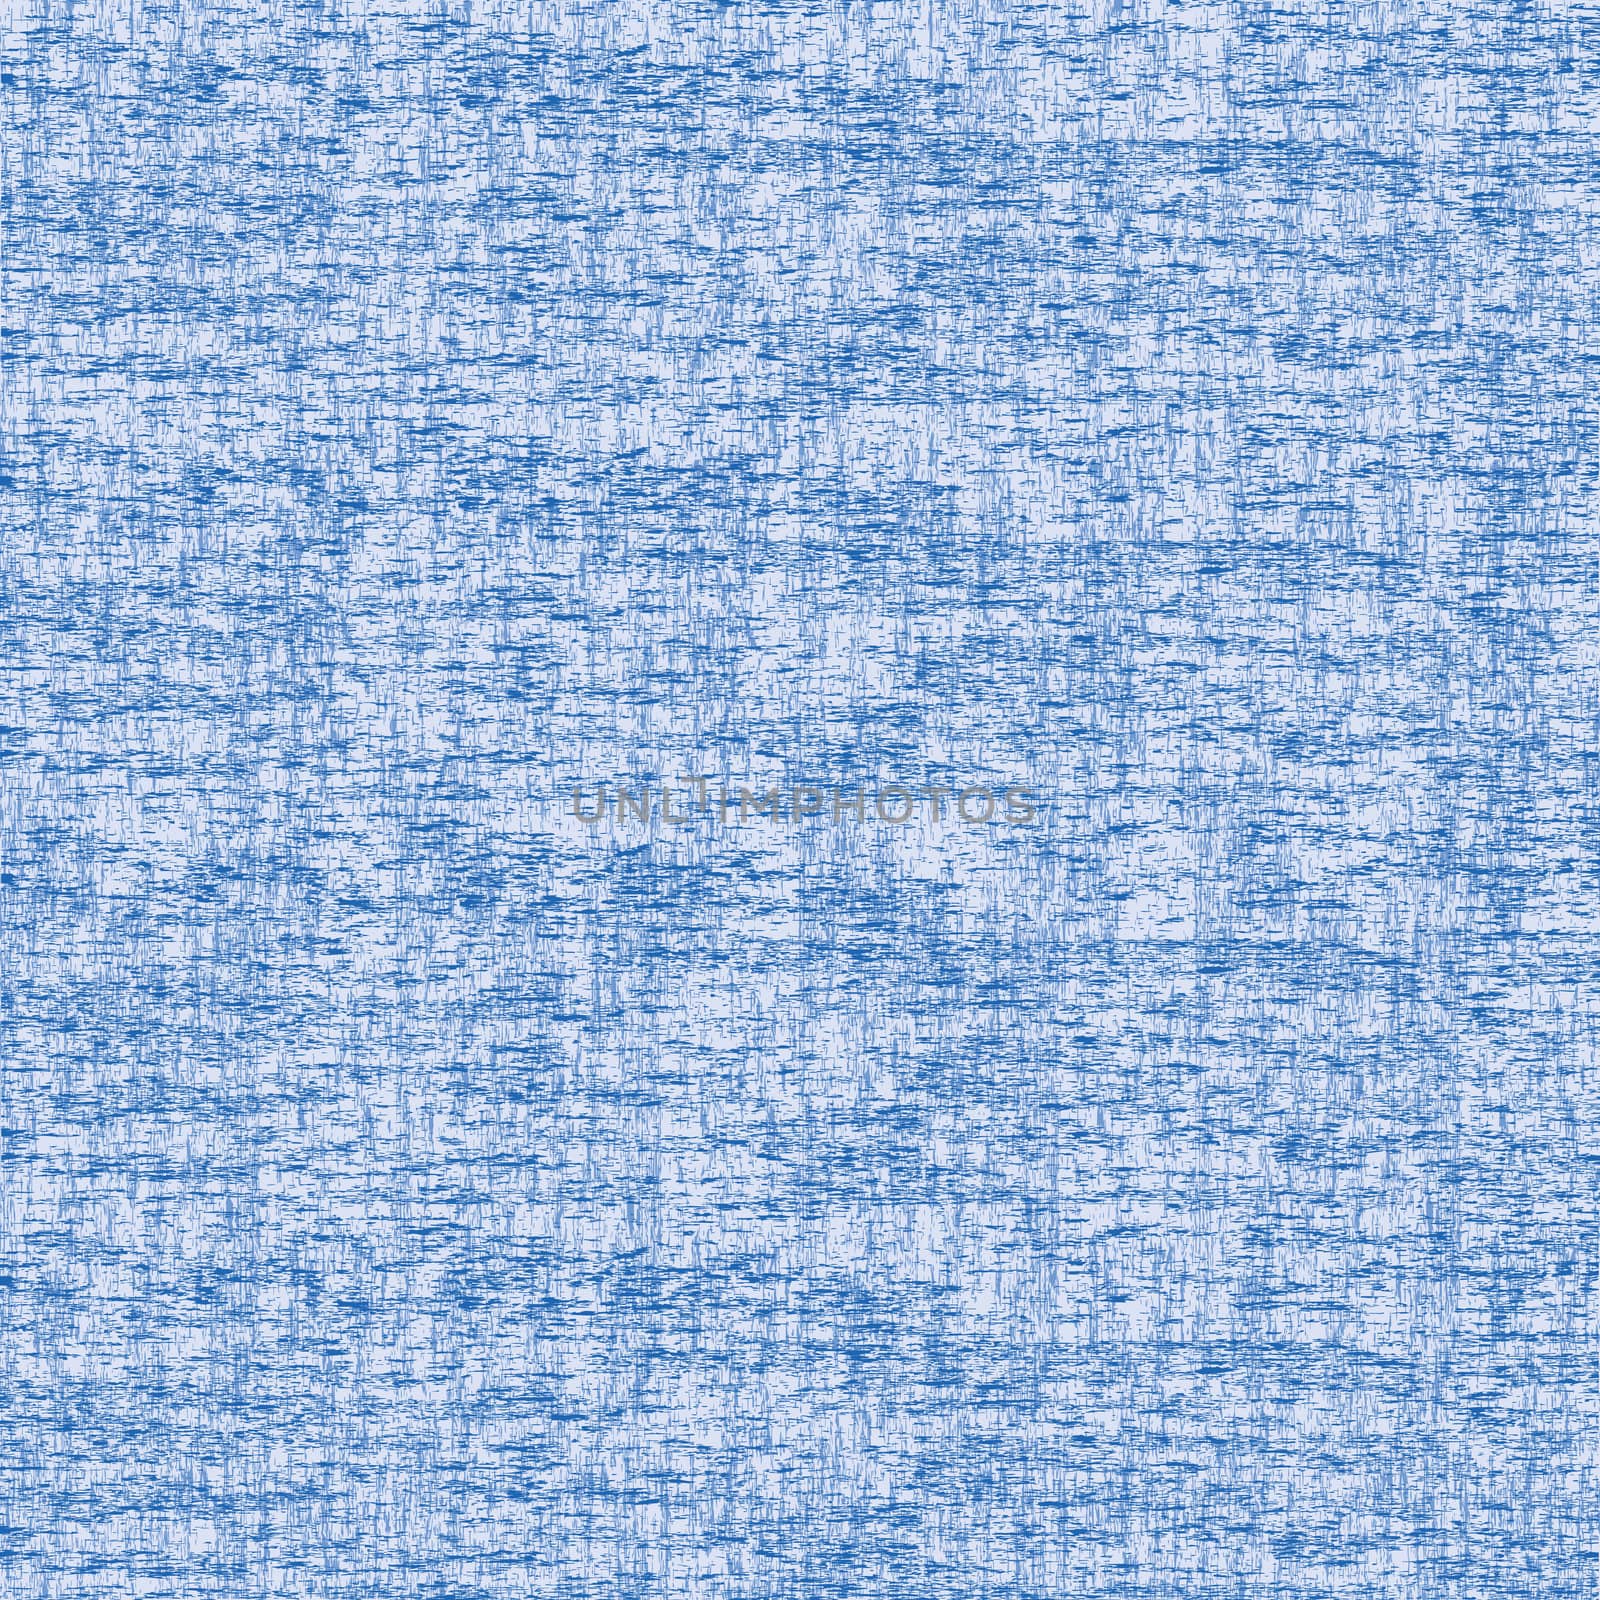 Grunge blue texture background